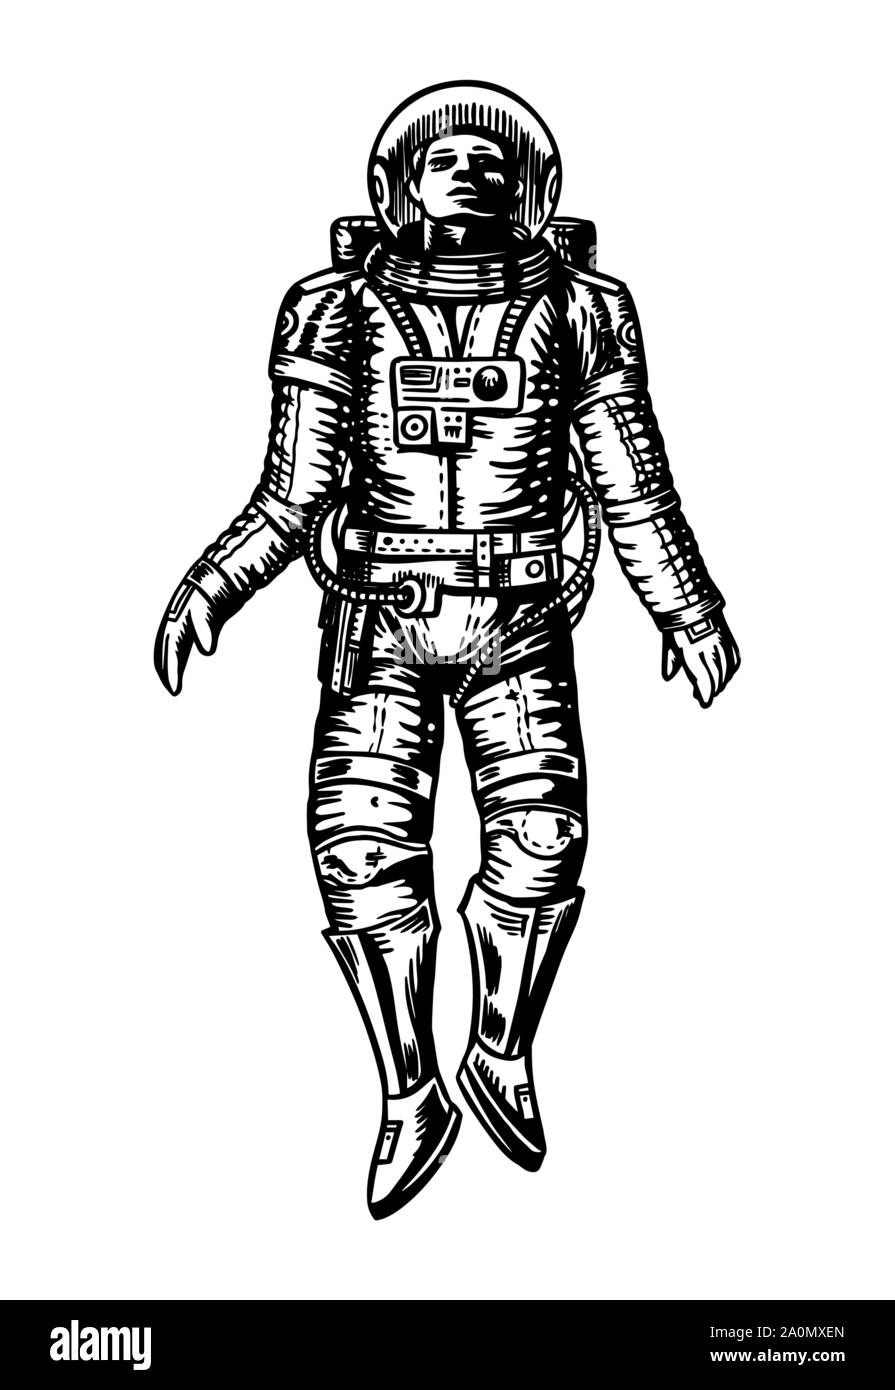 Planeur Spaceman dans l'espace. Astronaute dans le système solaire. Vieux croquis dessinés à la main, gravée dans un style vintage. Illustration de Vecteur